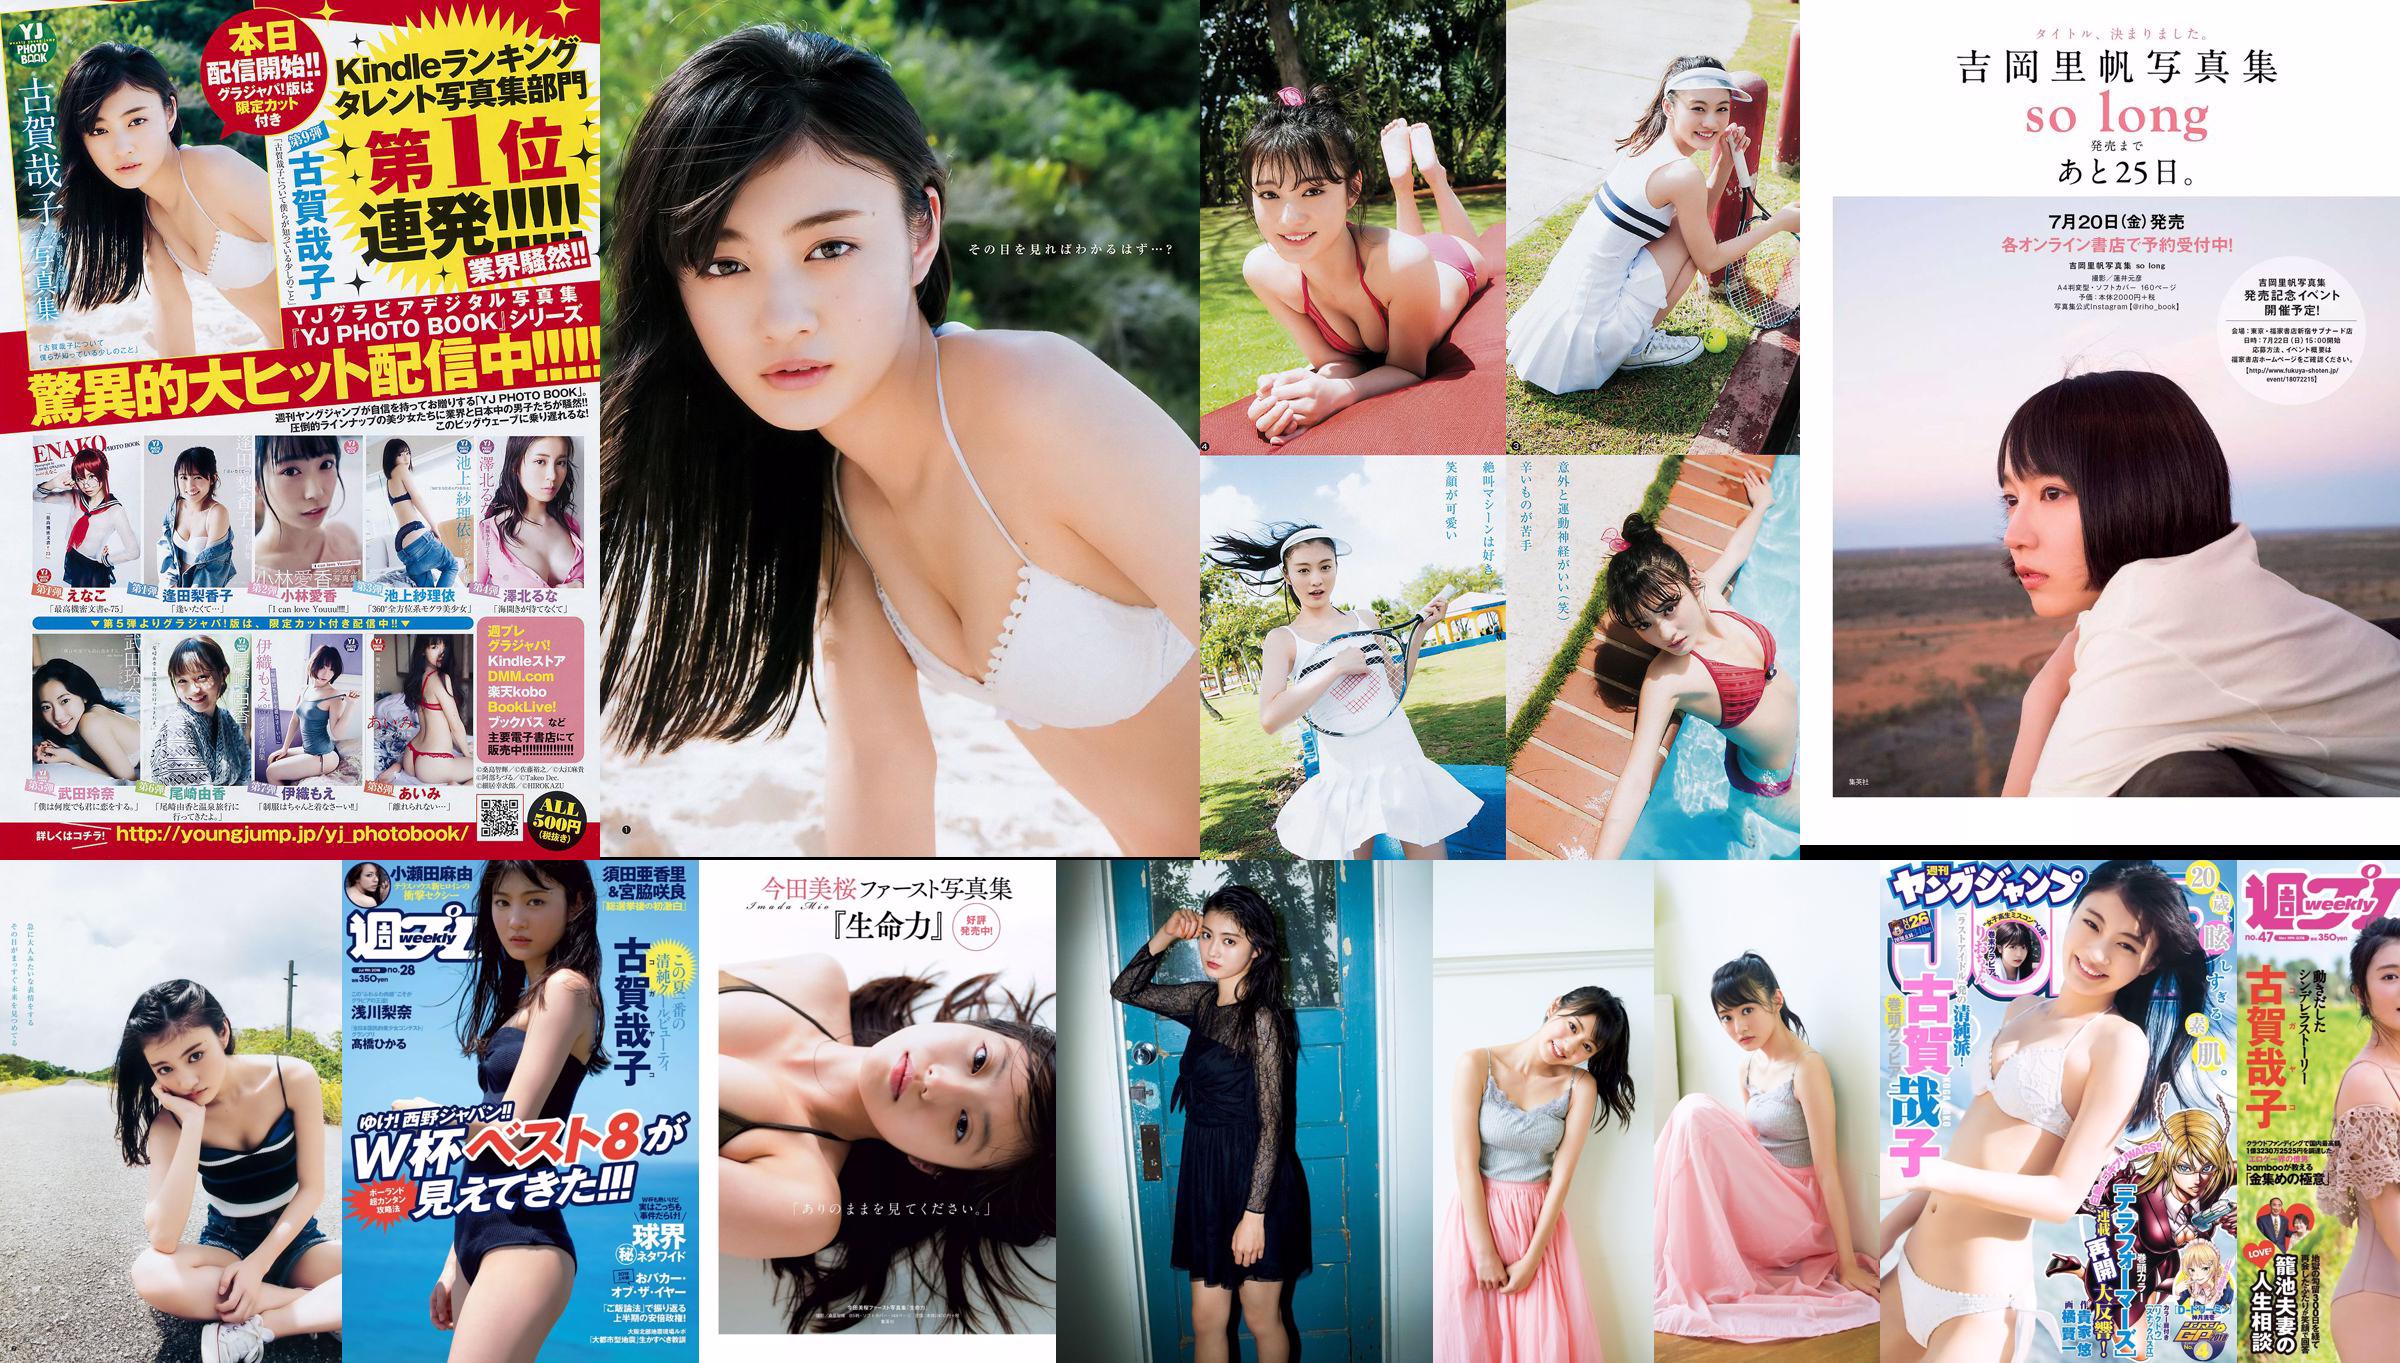 Yoshiko Koga Riochon [Wöchentlicher Jungsprung] Nr. 26 Fotomagazin im Jahr 2018 No.3d43d6 Seite 2